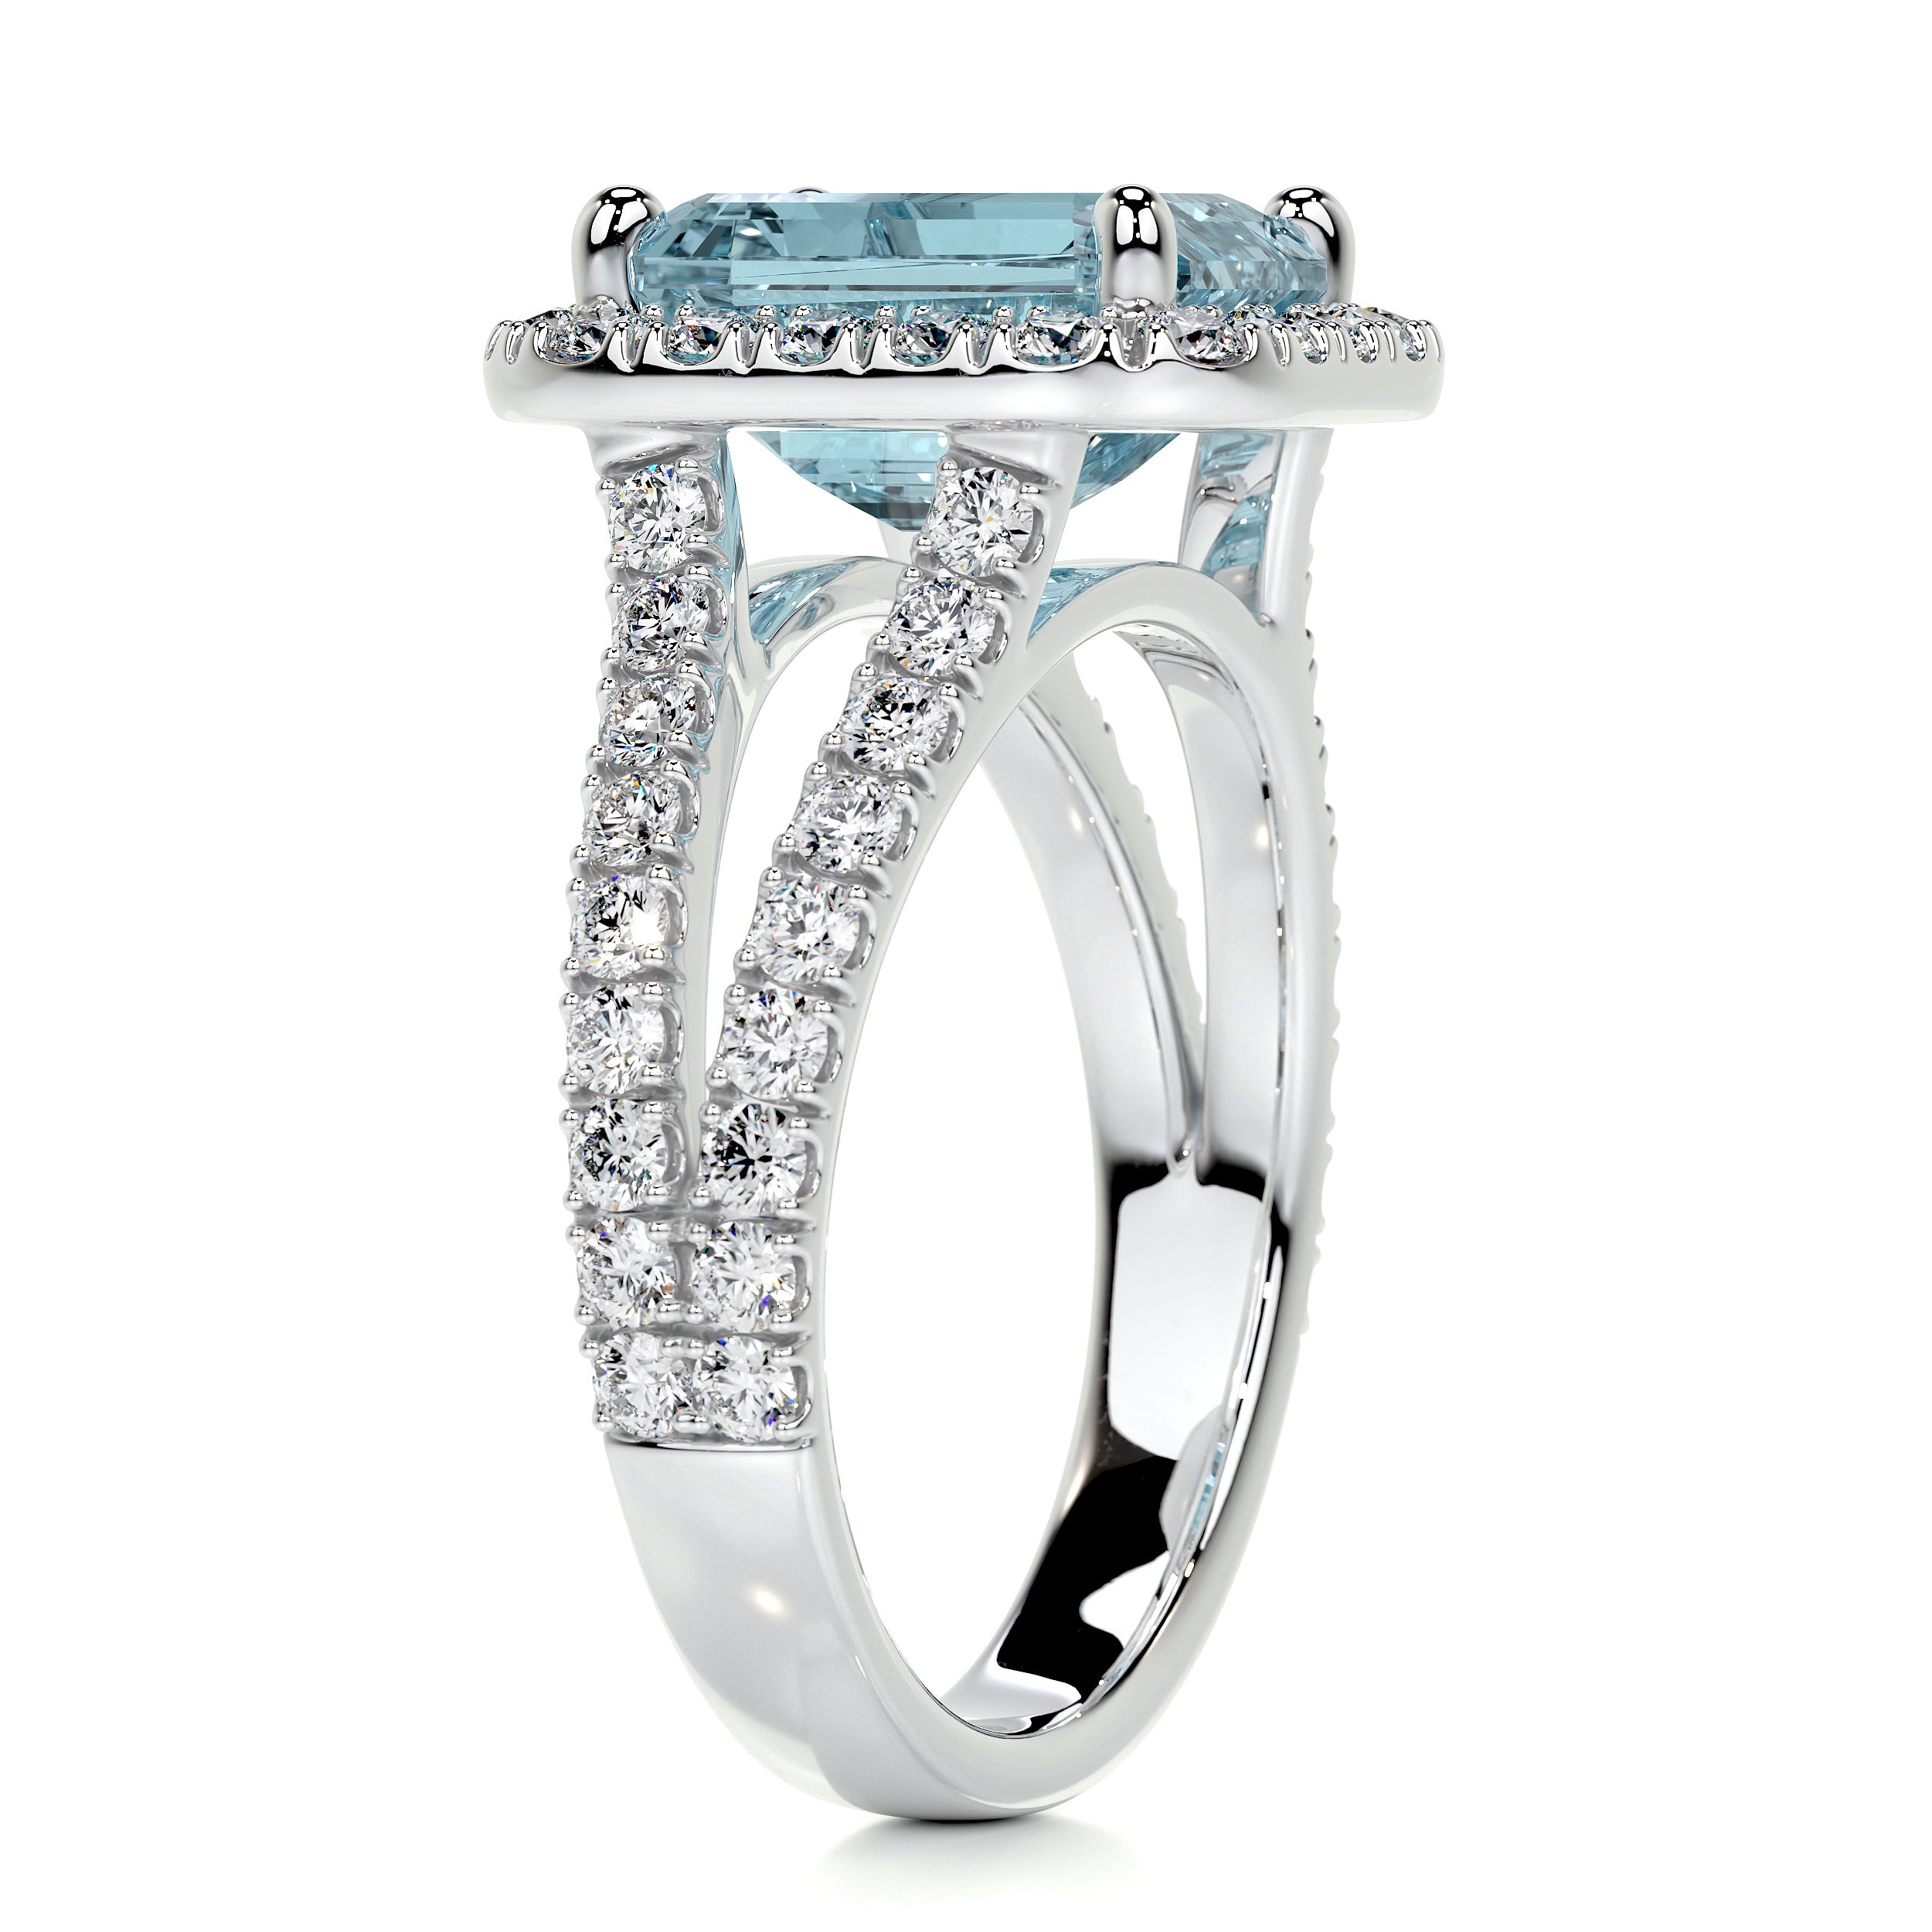 Melody Gemstone & Diamonds Ring   (5 Carat) - 14K White Gold